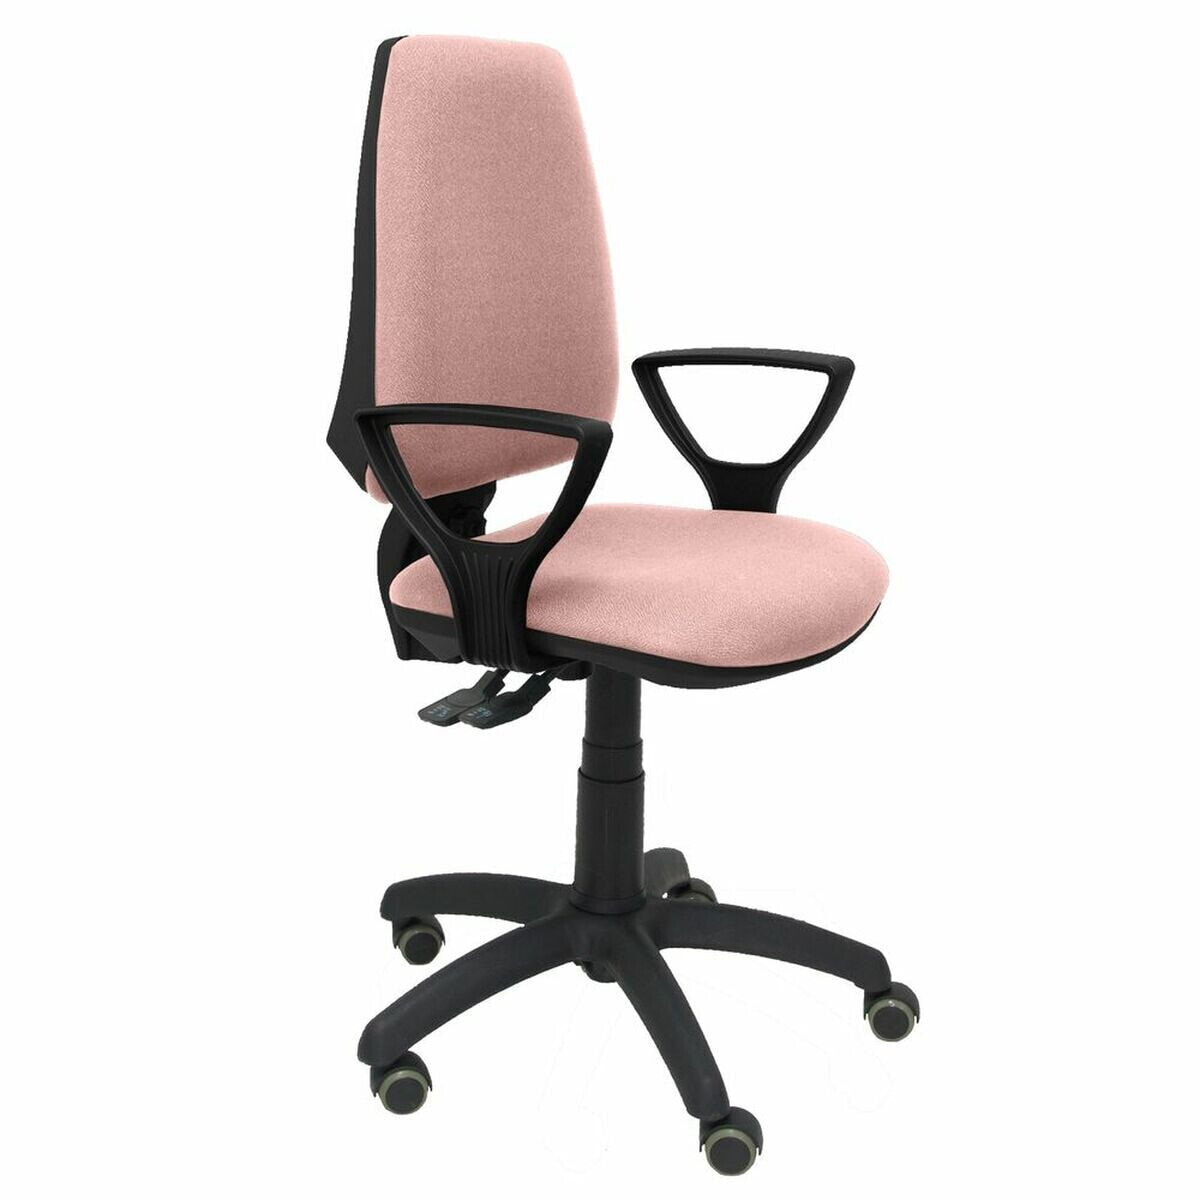 Office Chair Elche S bali P&C BGOLFRP Pink Light Pink